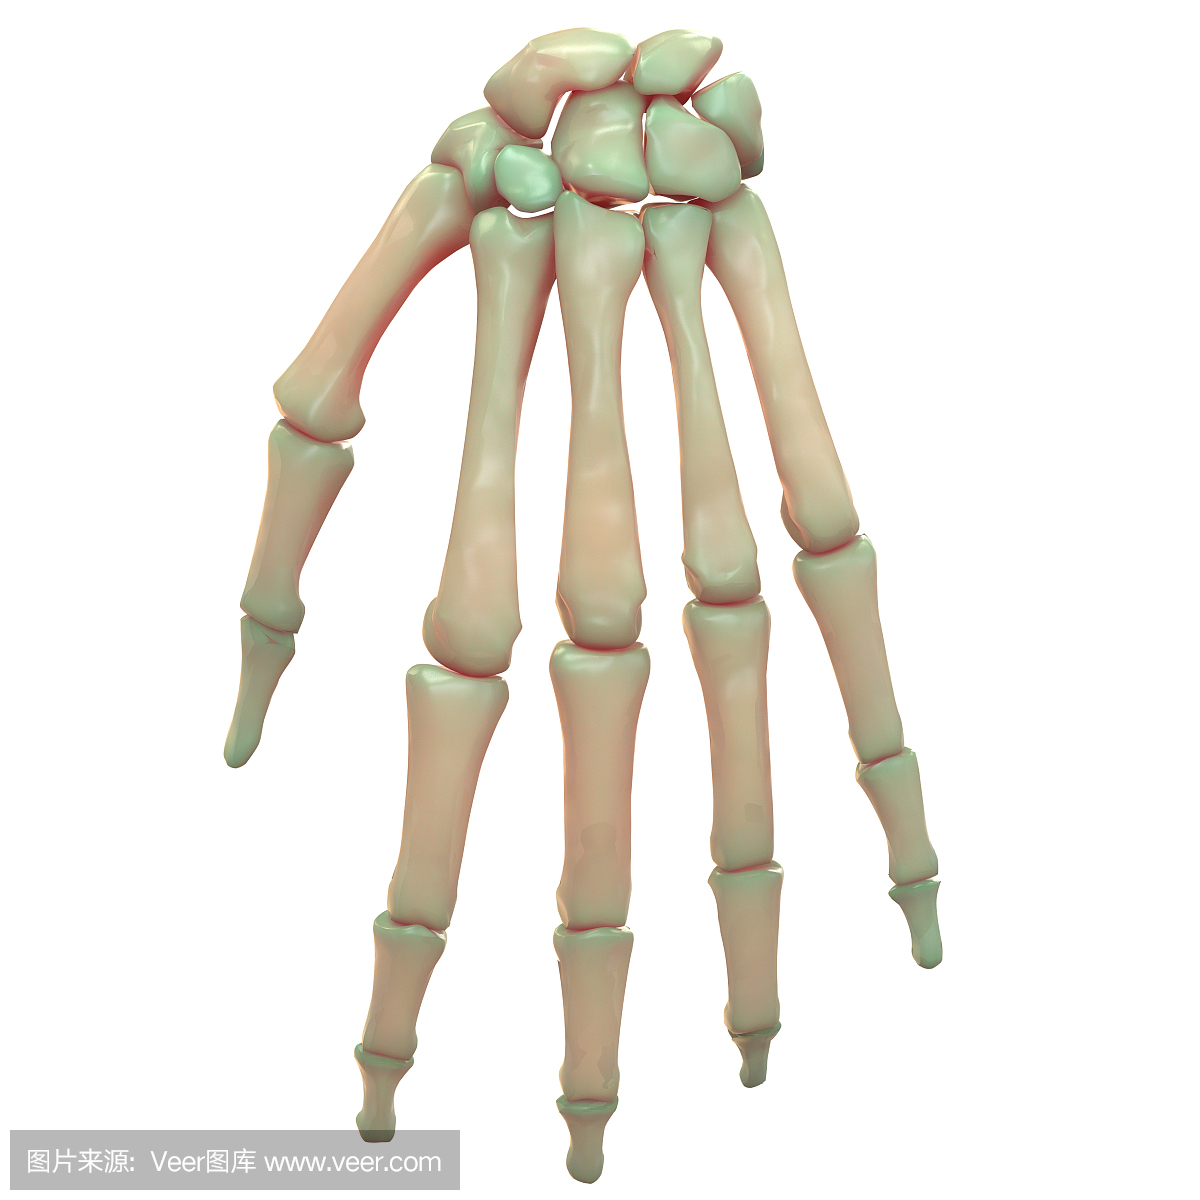 人体骨骼系统手掌关节解剖学(后视图)